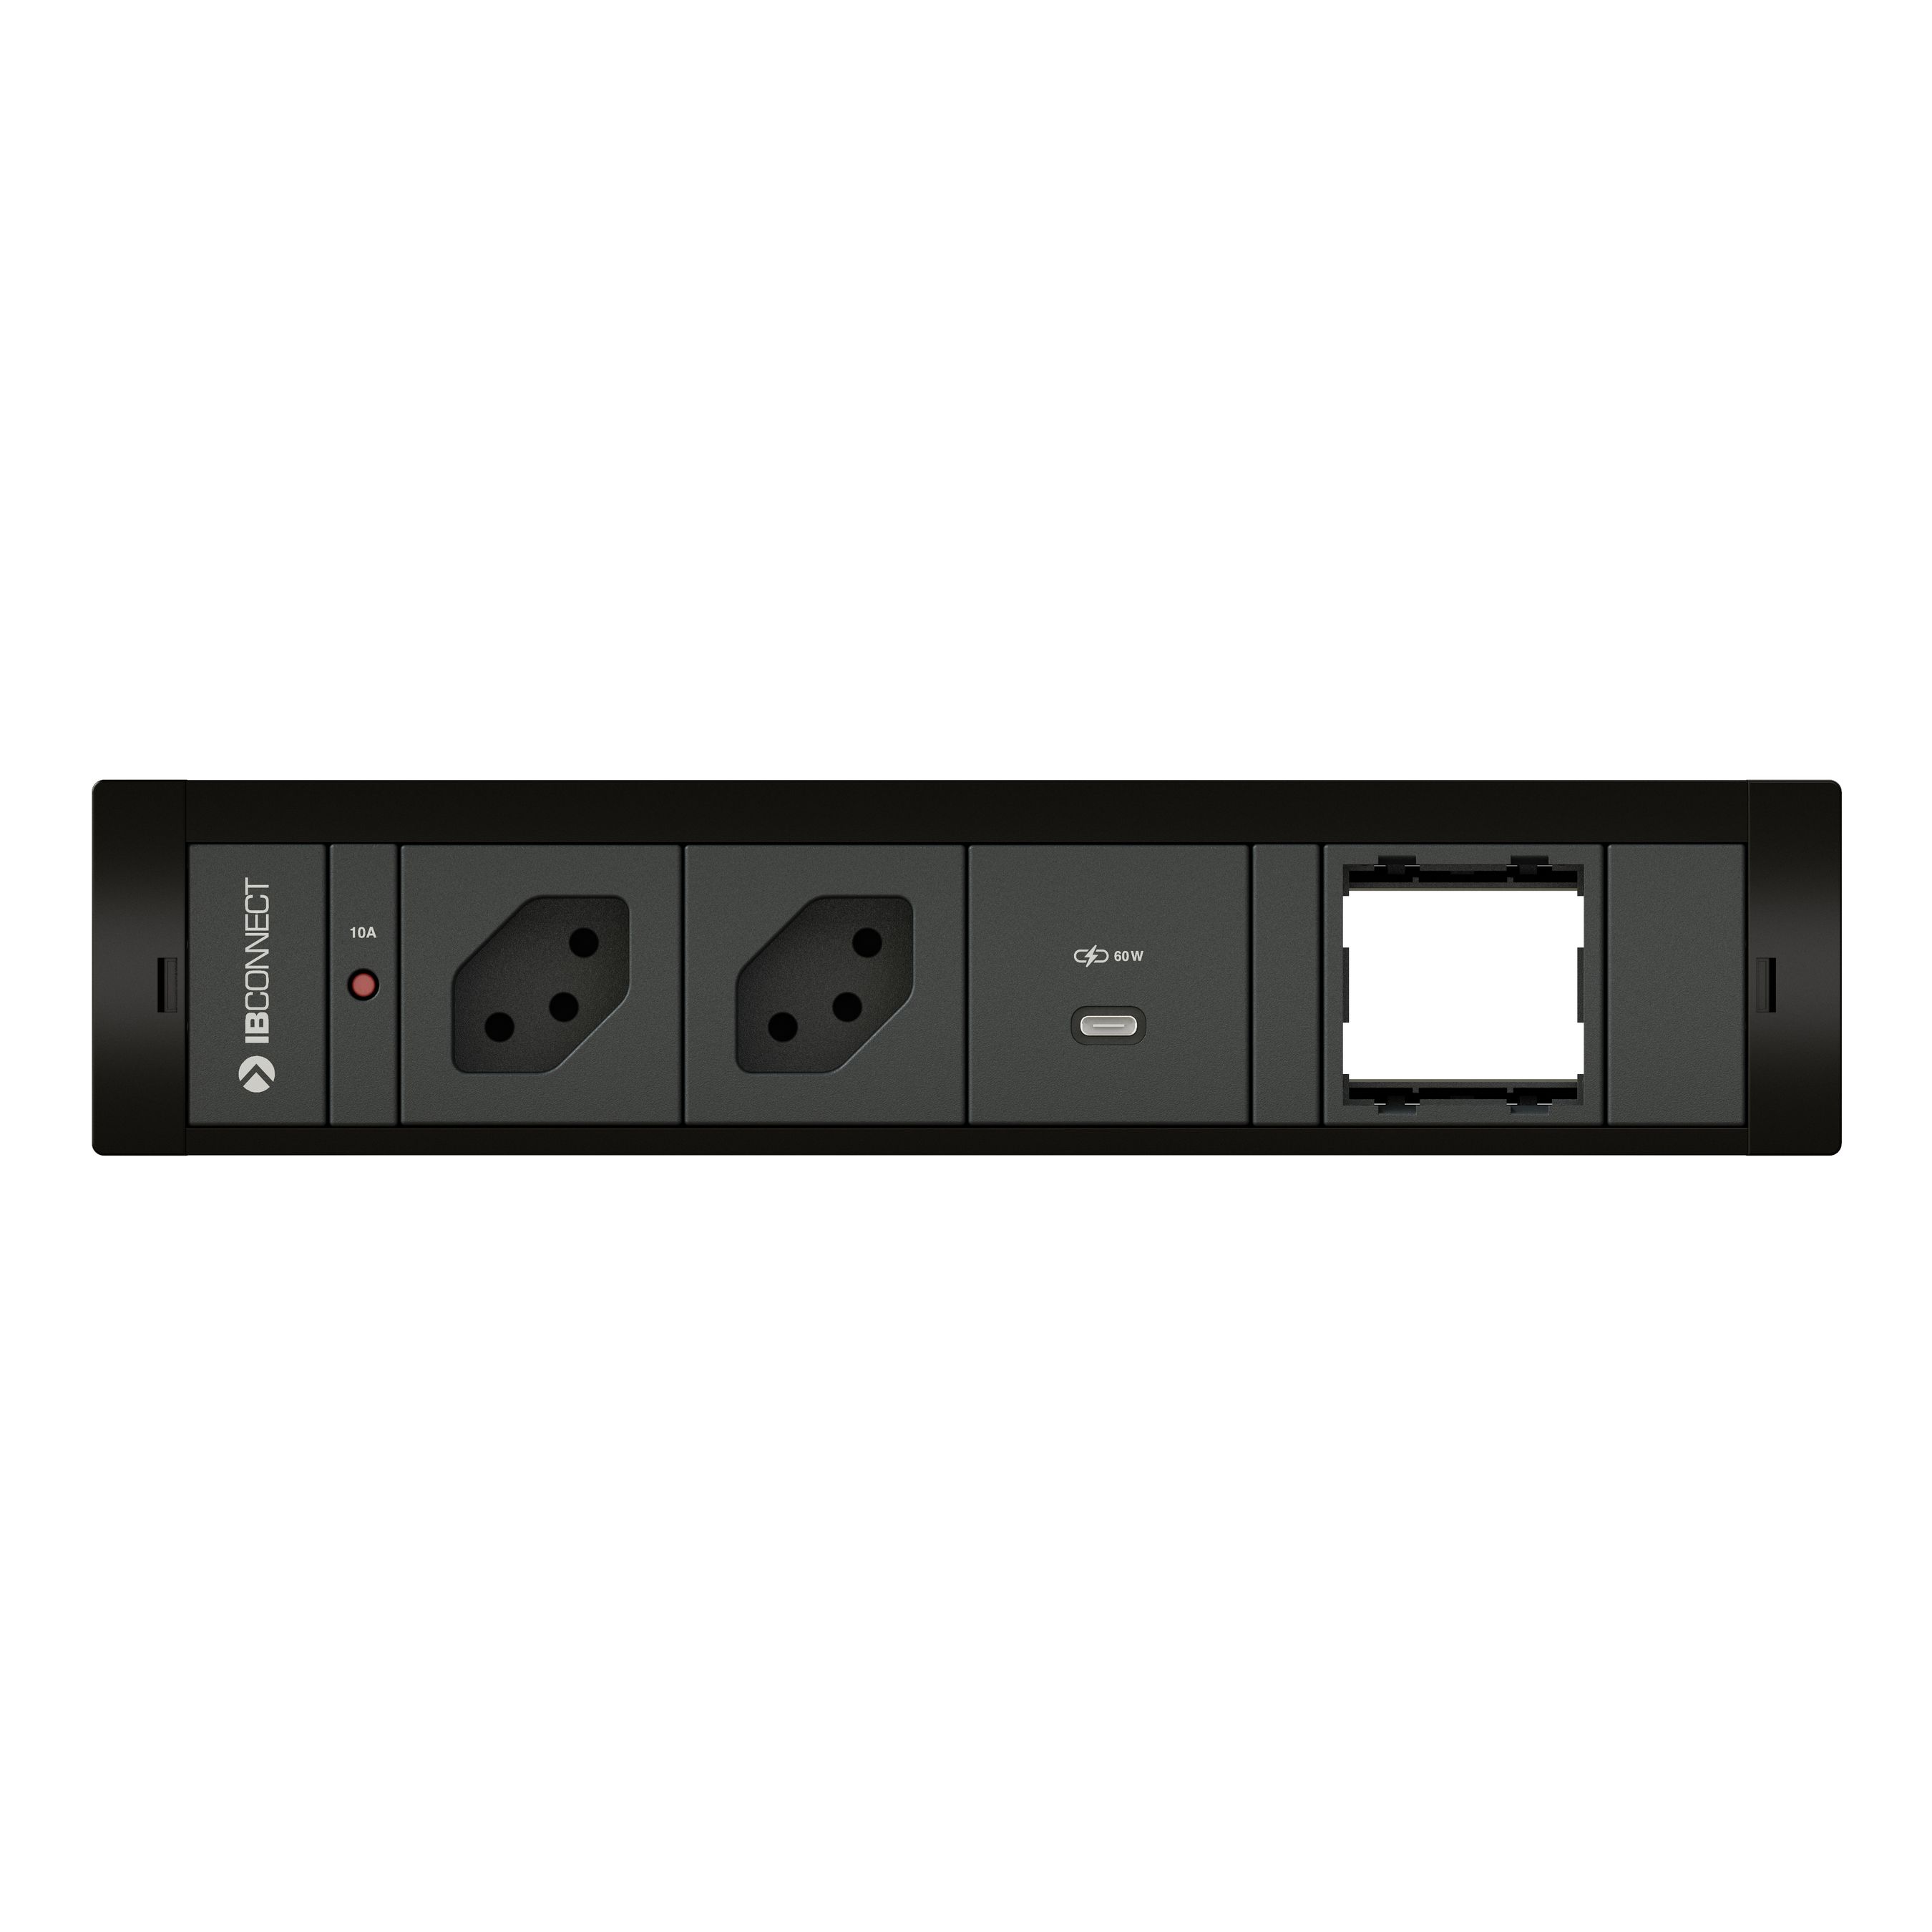 BOX6 - 2 X SOCKET + 1 X USB 60W + 1 X EMPTY MODULE